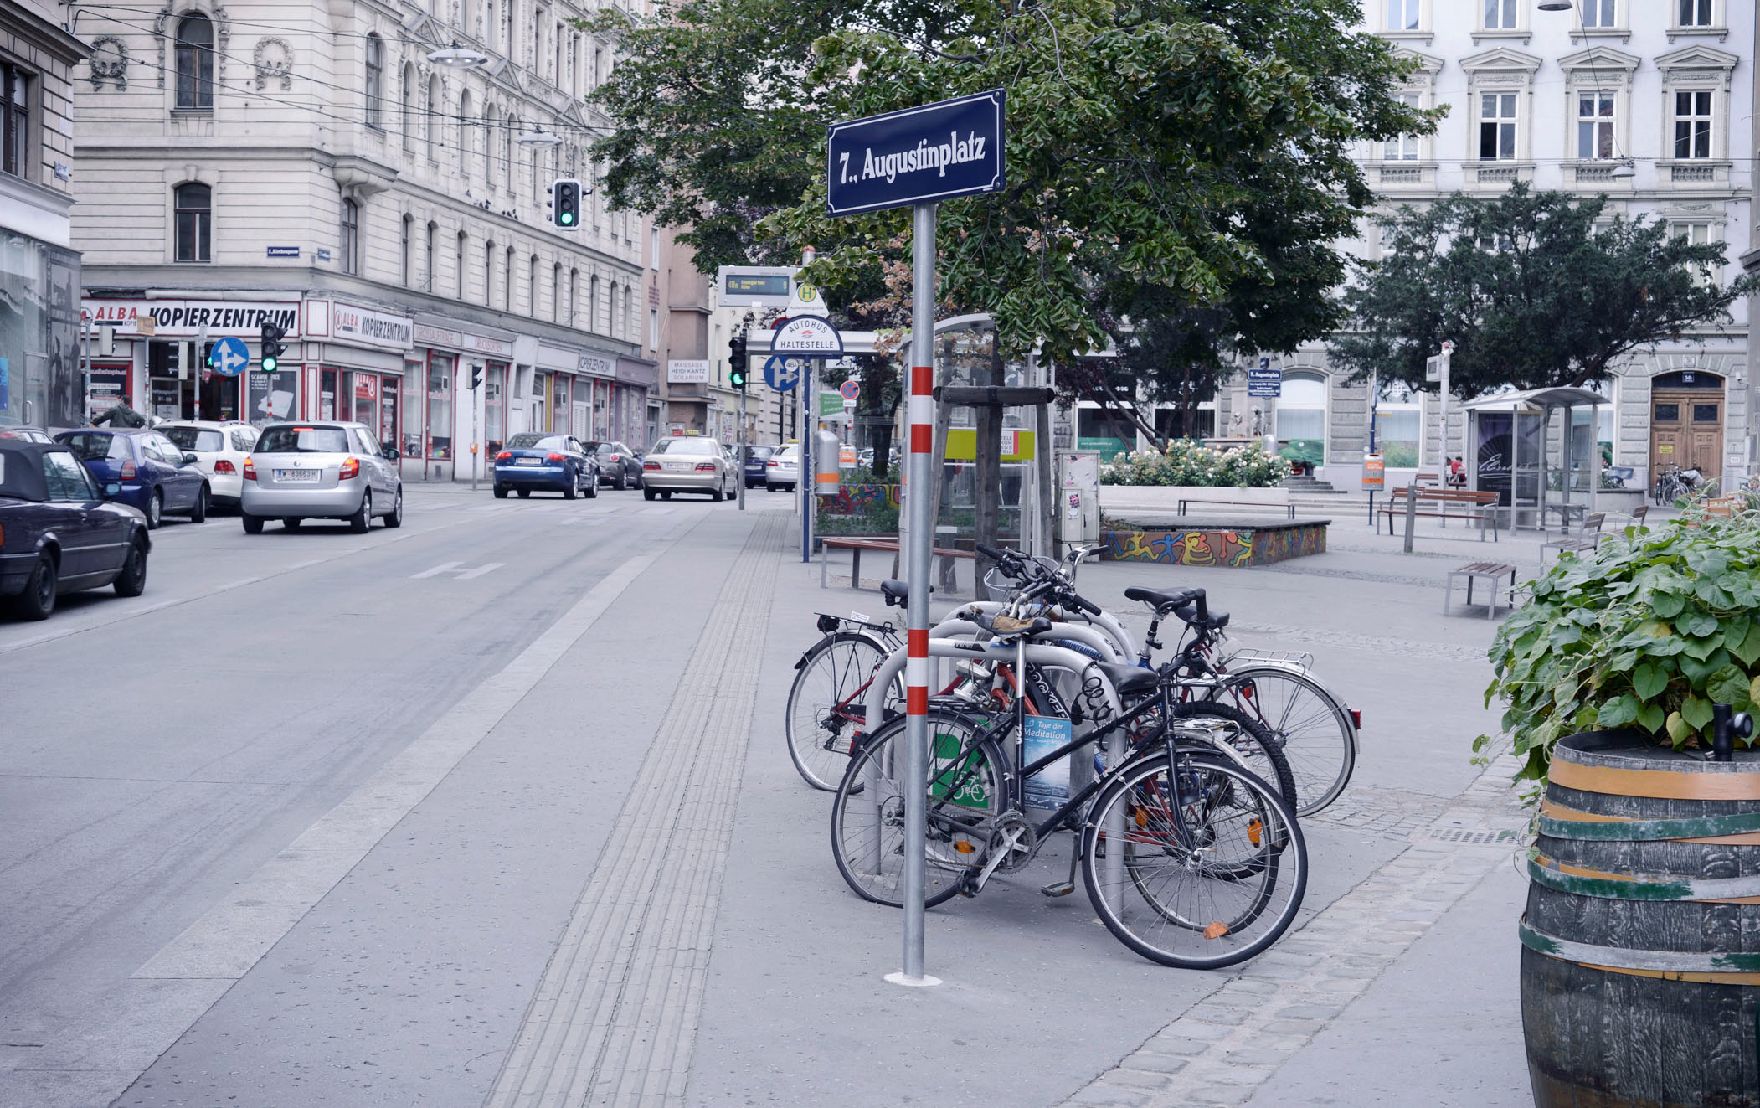 Fahrräder abgestellt am Augustinplatz. Schlagworte: Fahrrad, Fahrzeuge, Verkehr, Platz, Stadtlandschaften, Straße